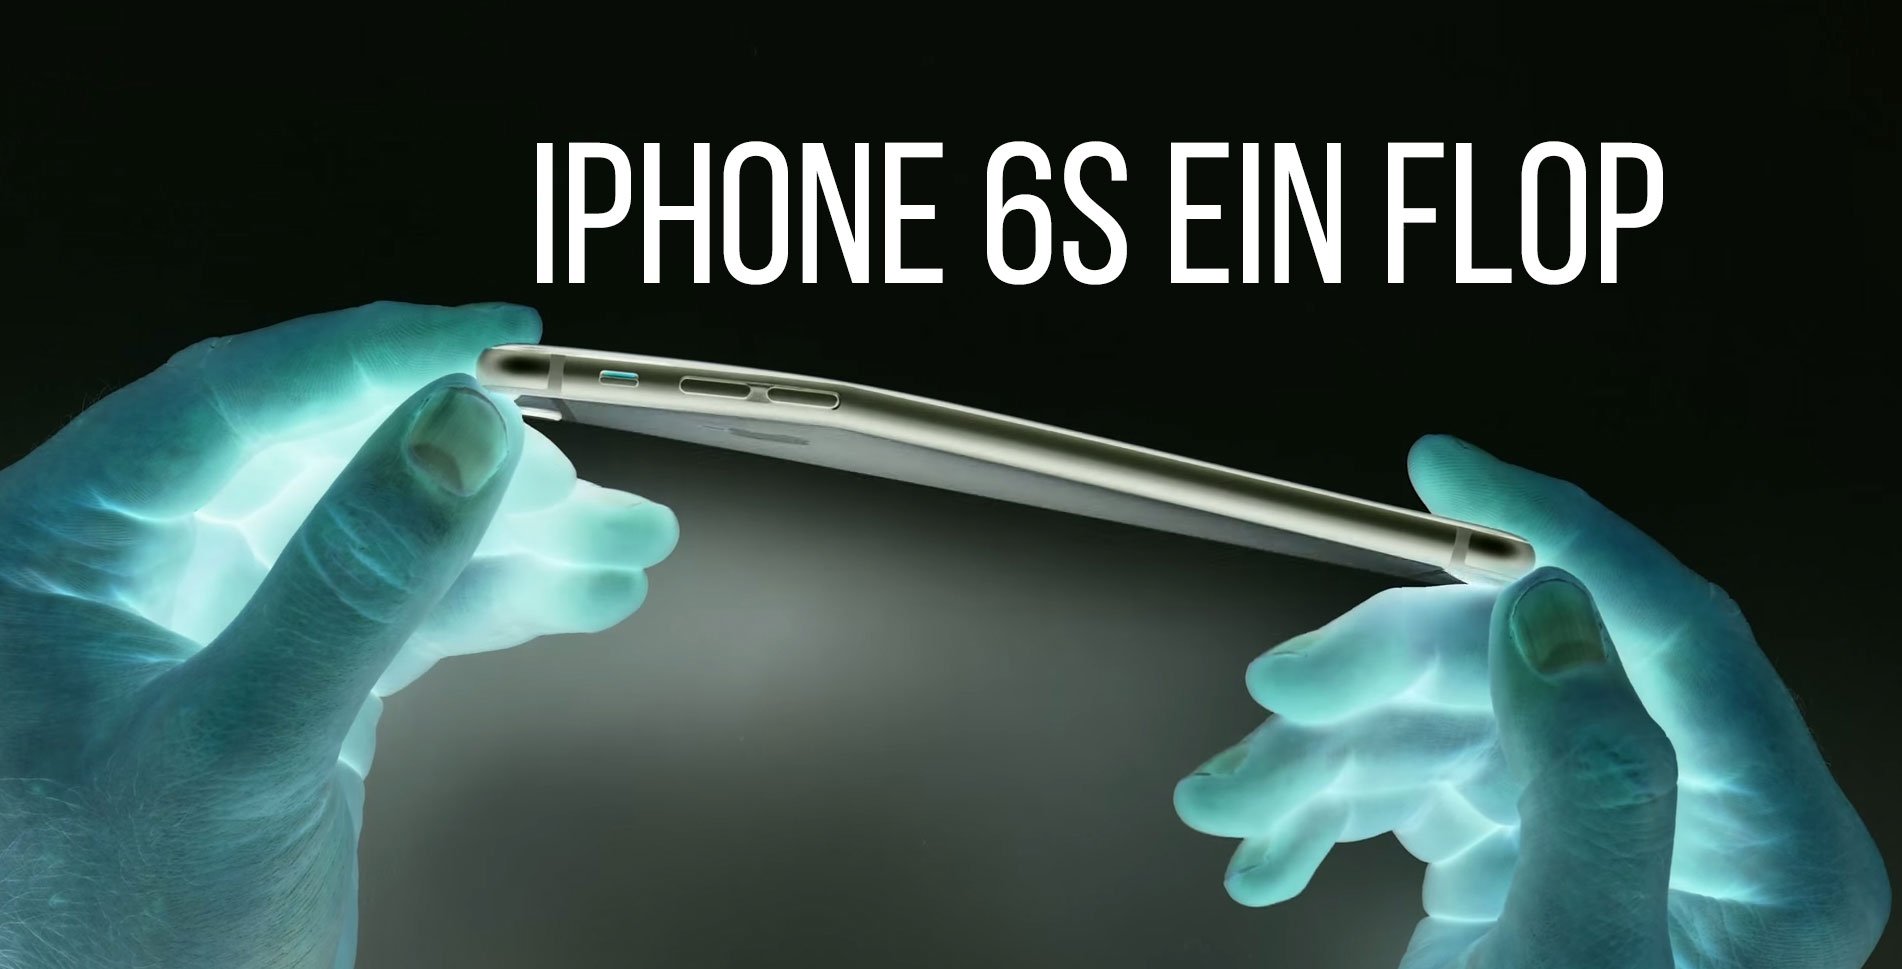 Apple iPhone 6S ein Flop: keiner will das neue iPhone? 1